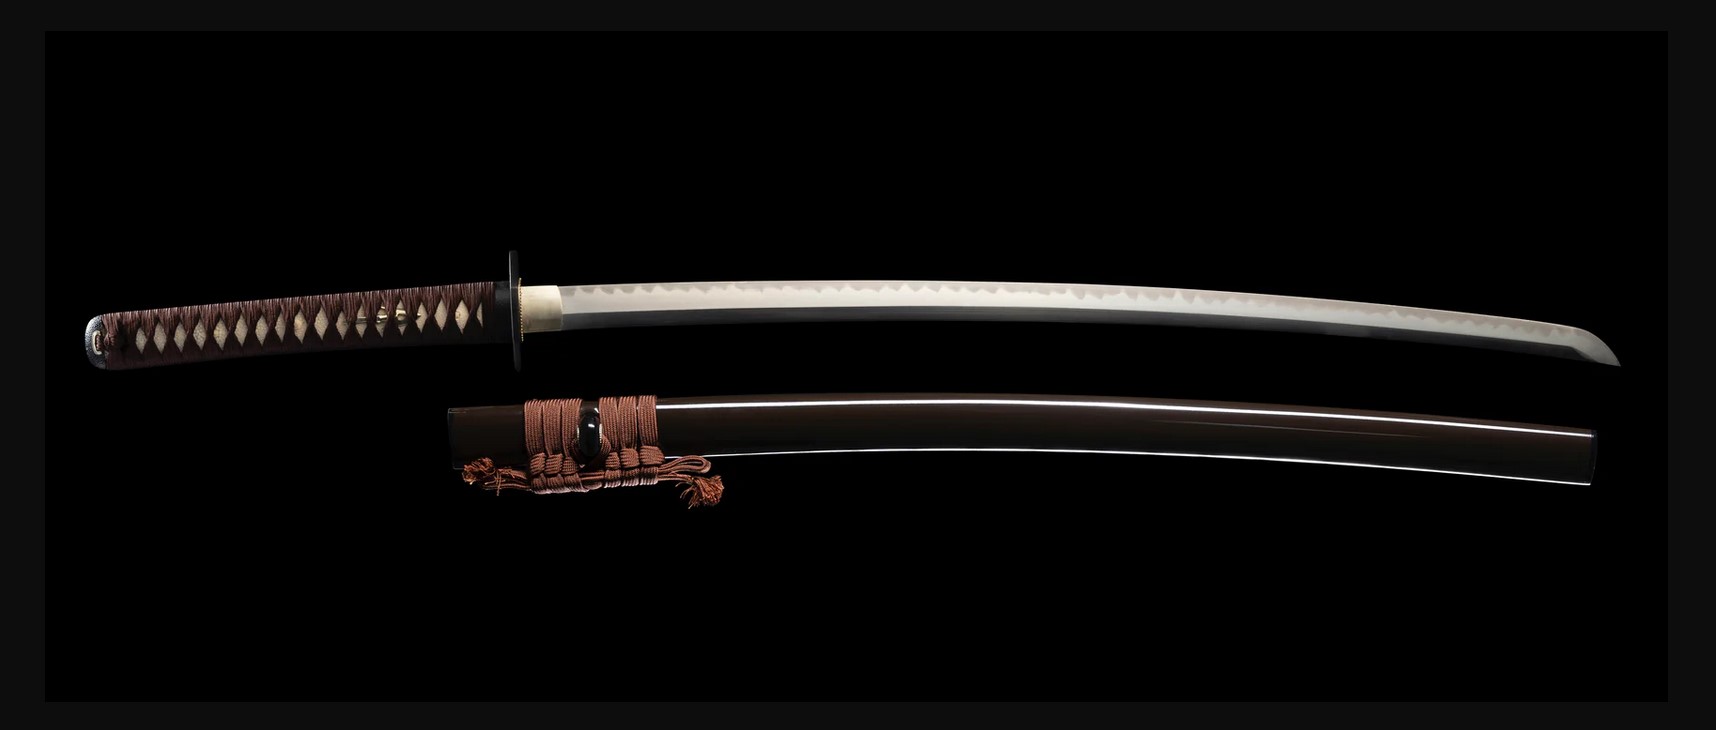 Amourer's Katana, 72.39 cm blade length, 27.94 cm handle length